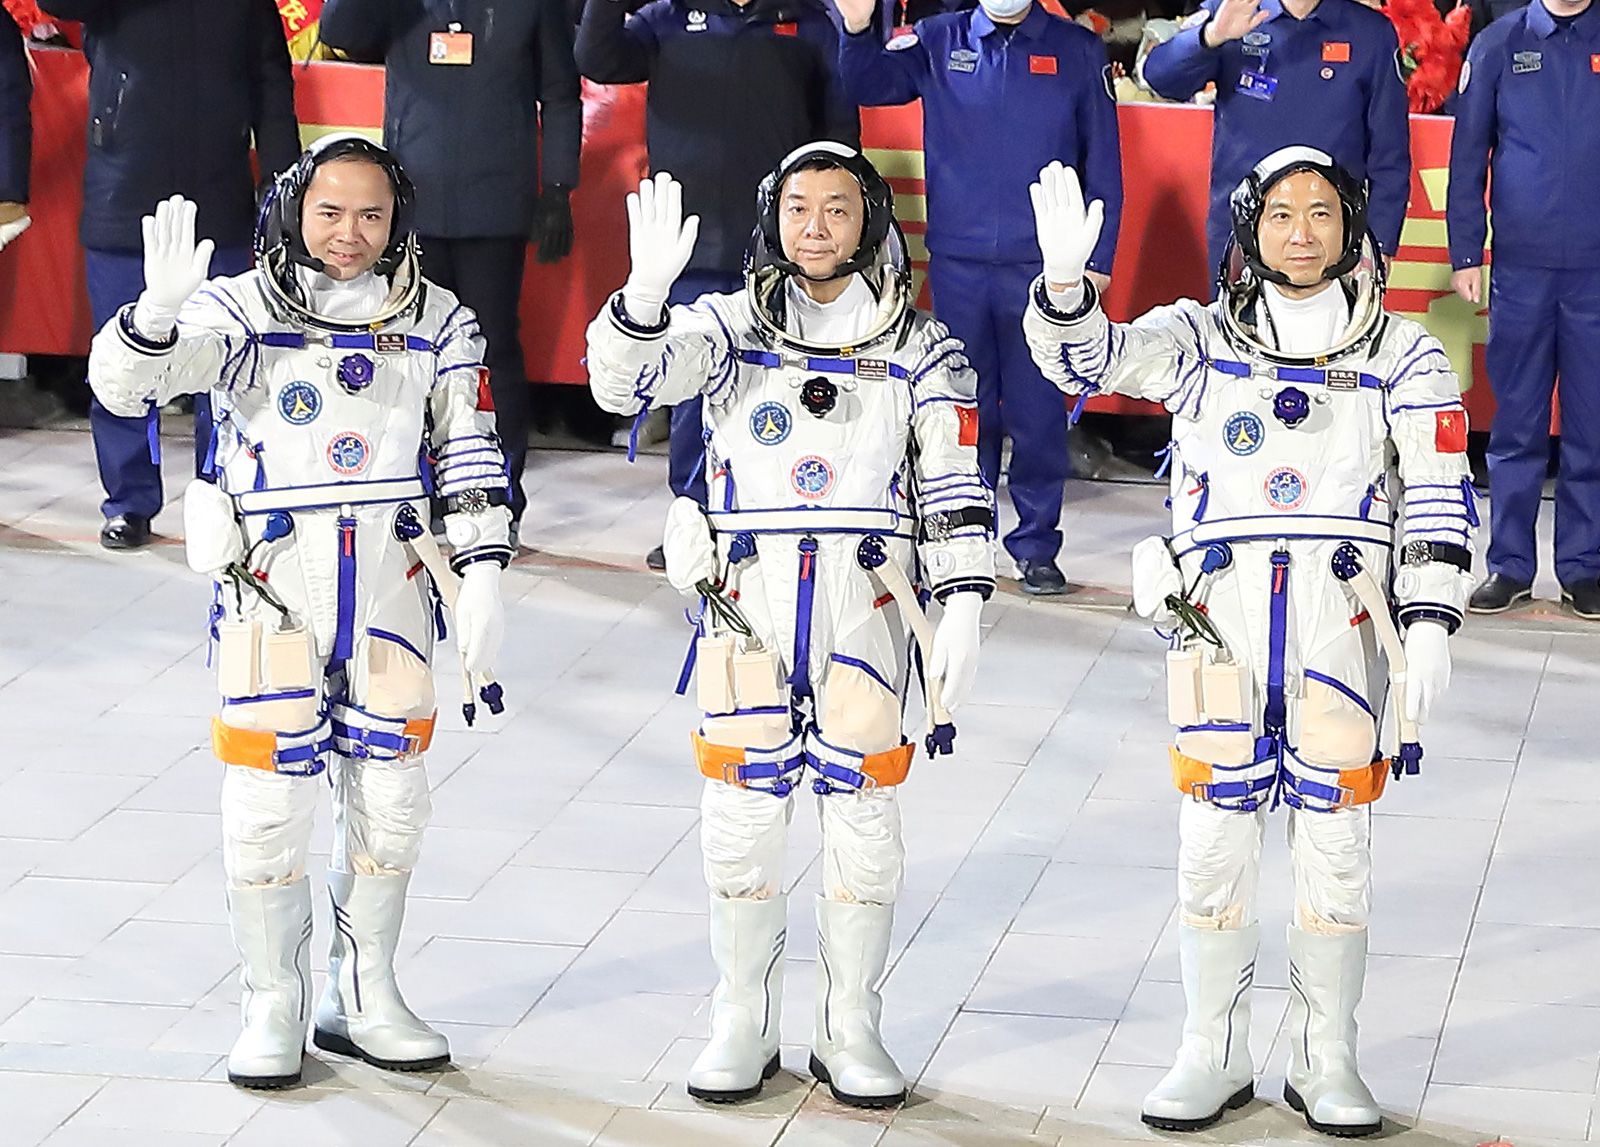 chinese astronaut